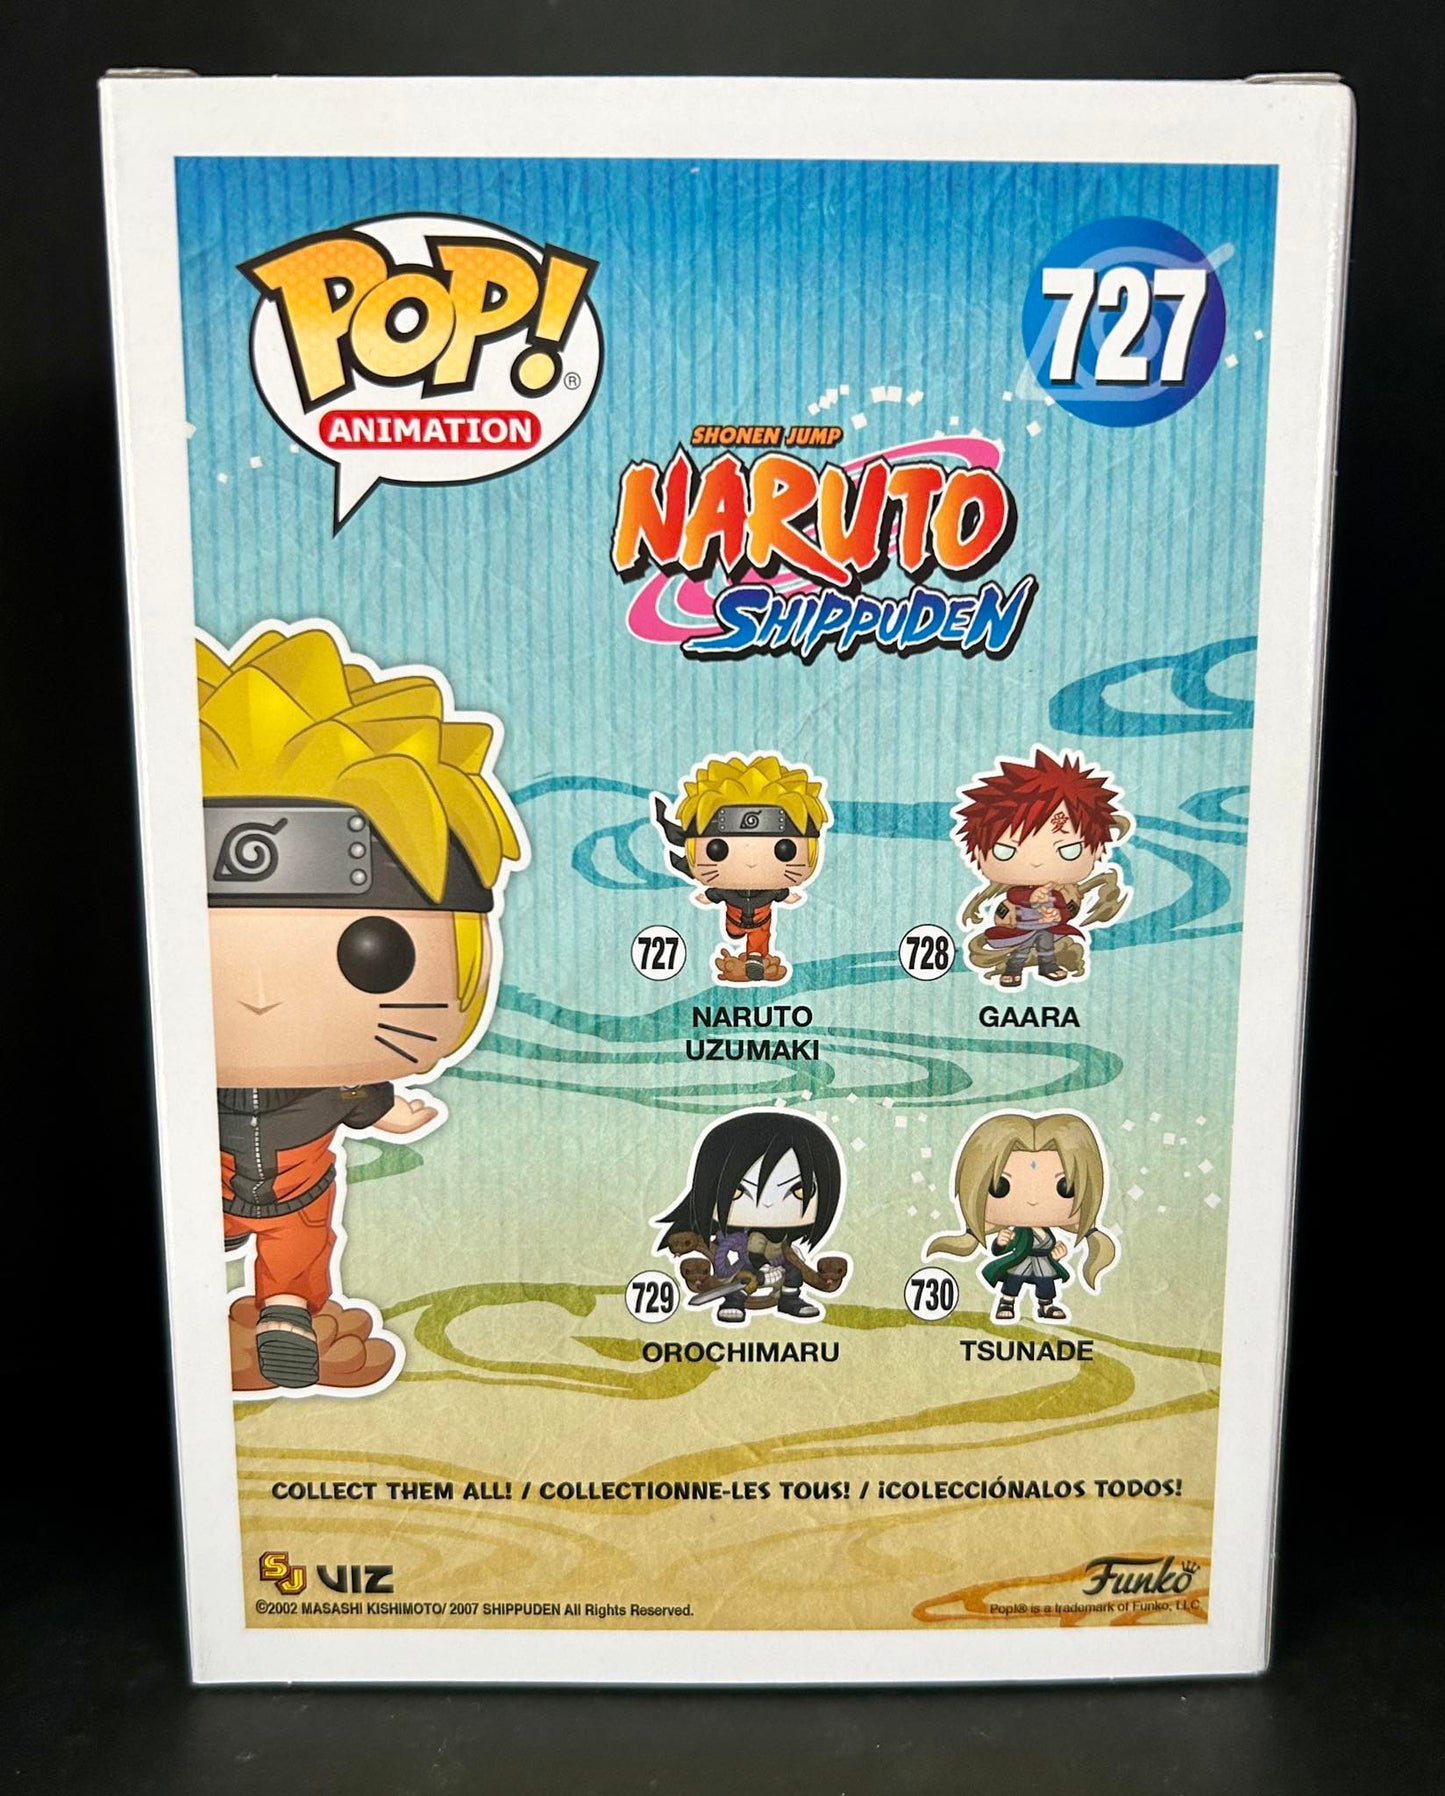 Funko Pop! Animation: Naruto - Naruto Running